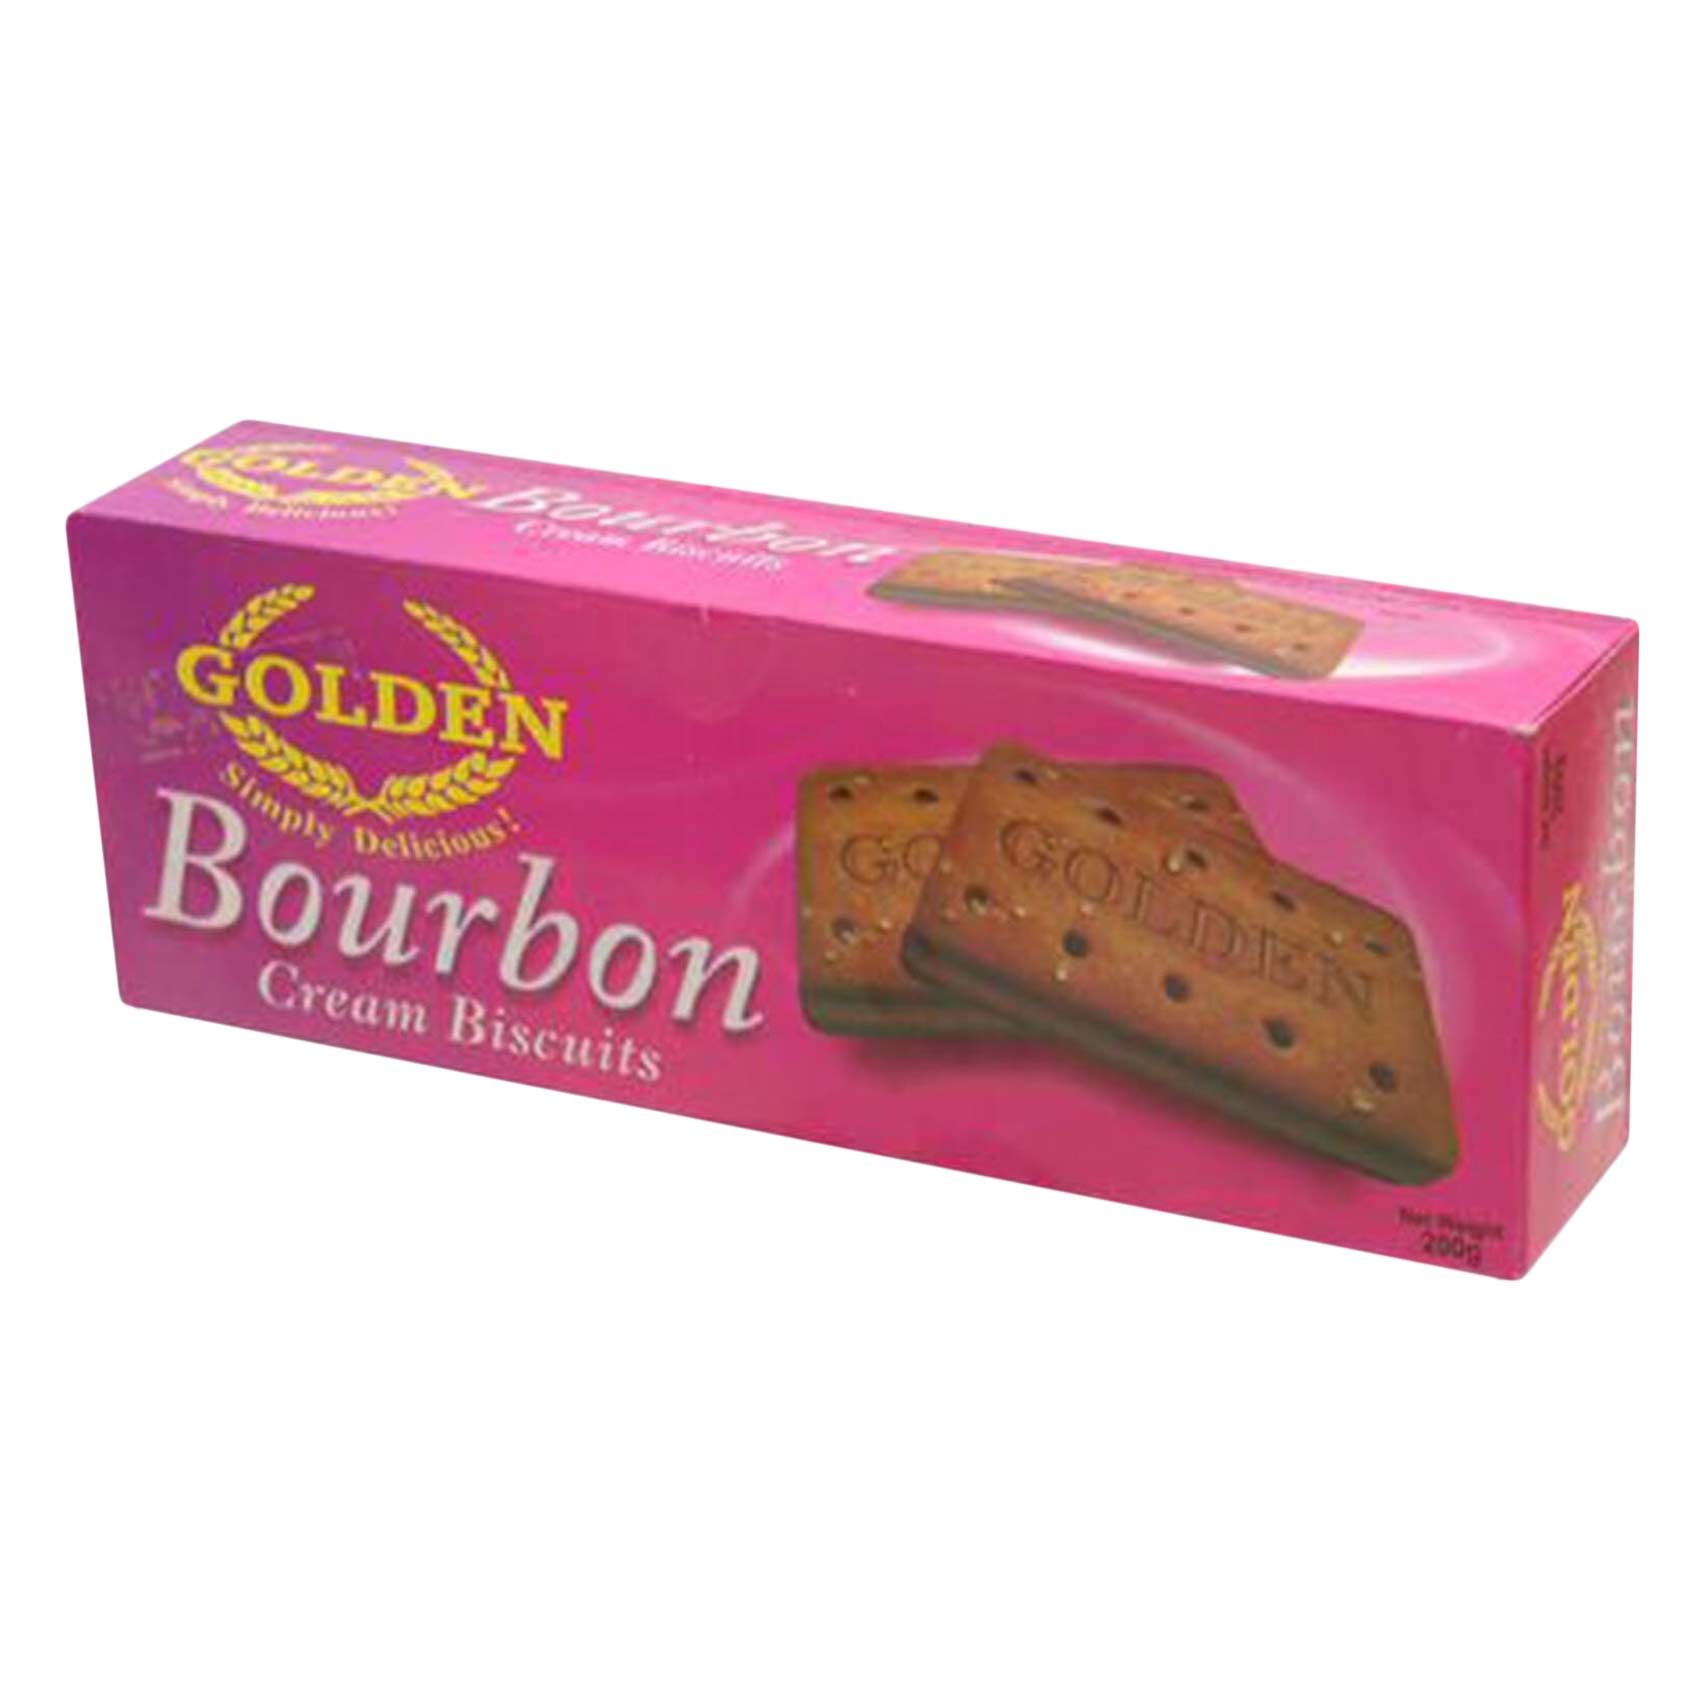 Golden Bourbon Cream Biscuits 200g